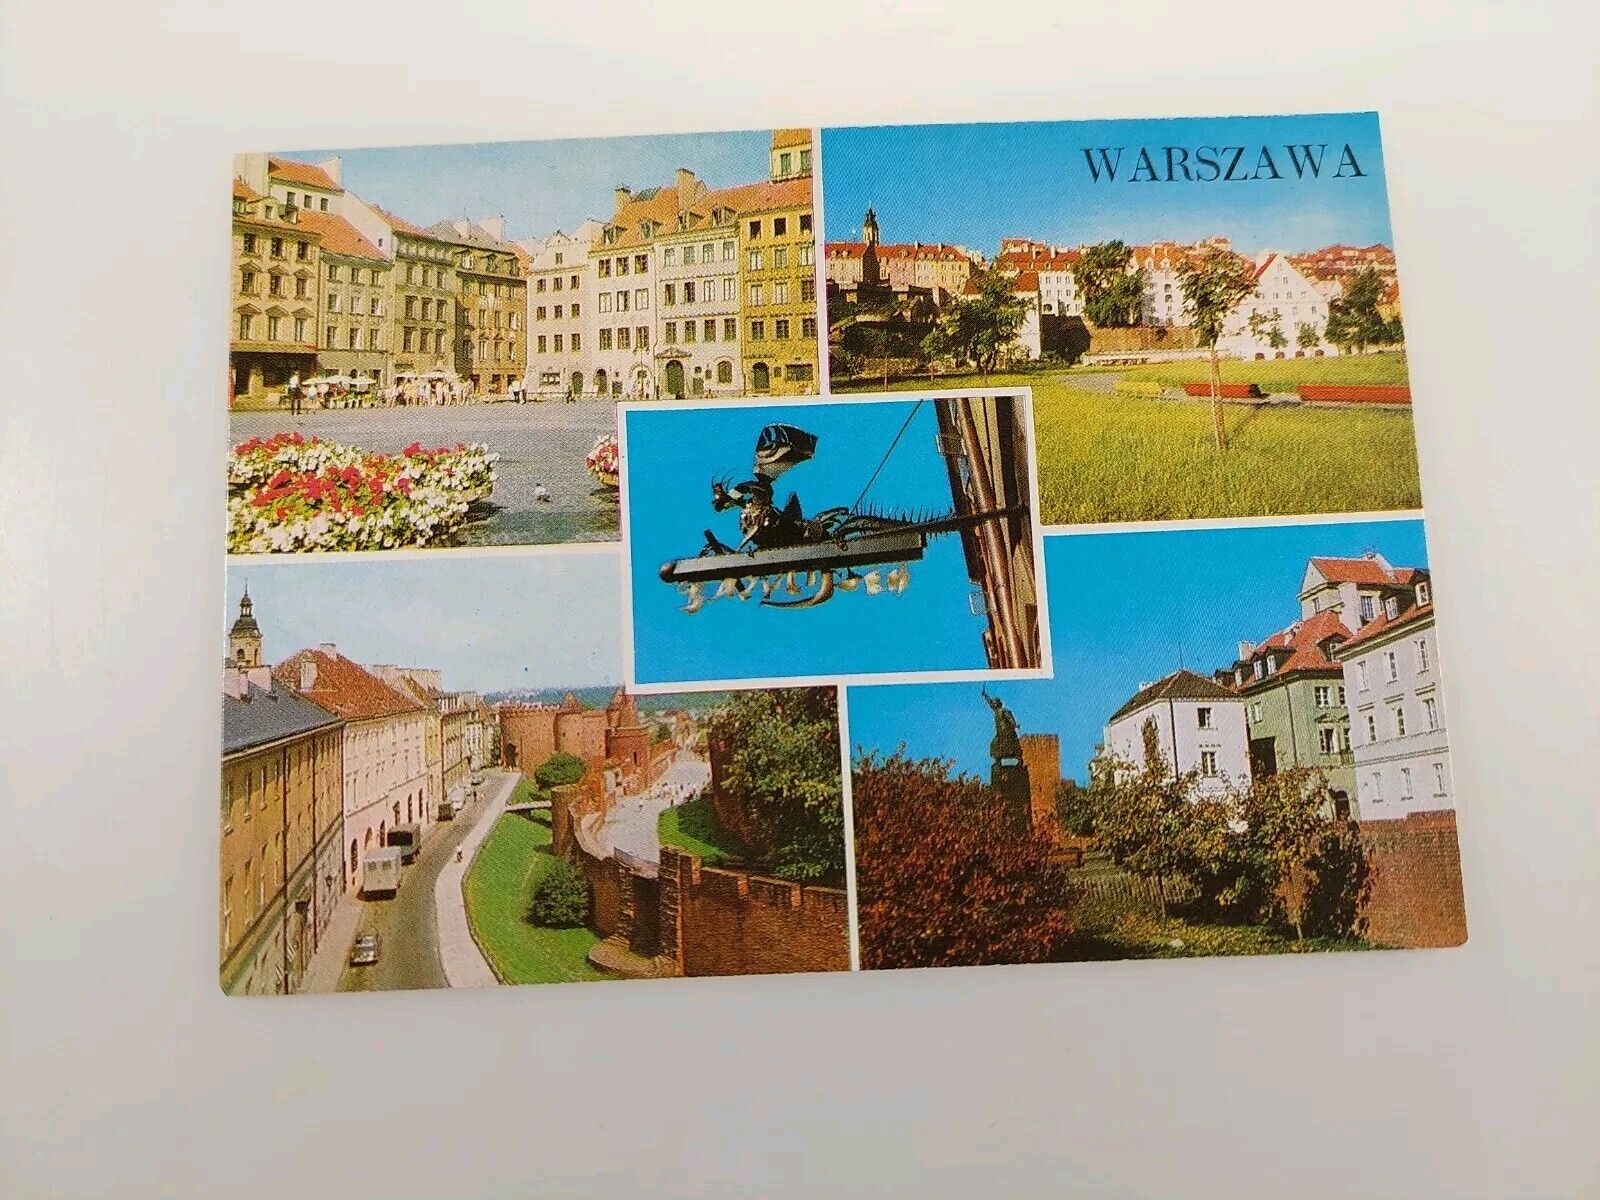 Warszawa (Warsaw Poland) 5 Views Postcard 1